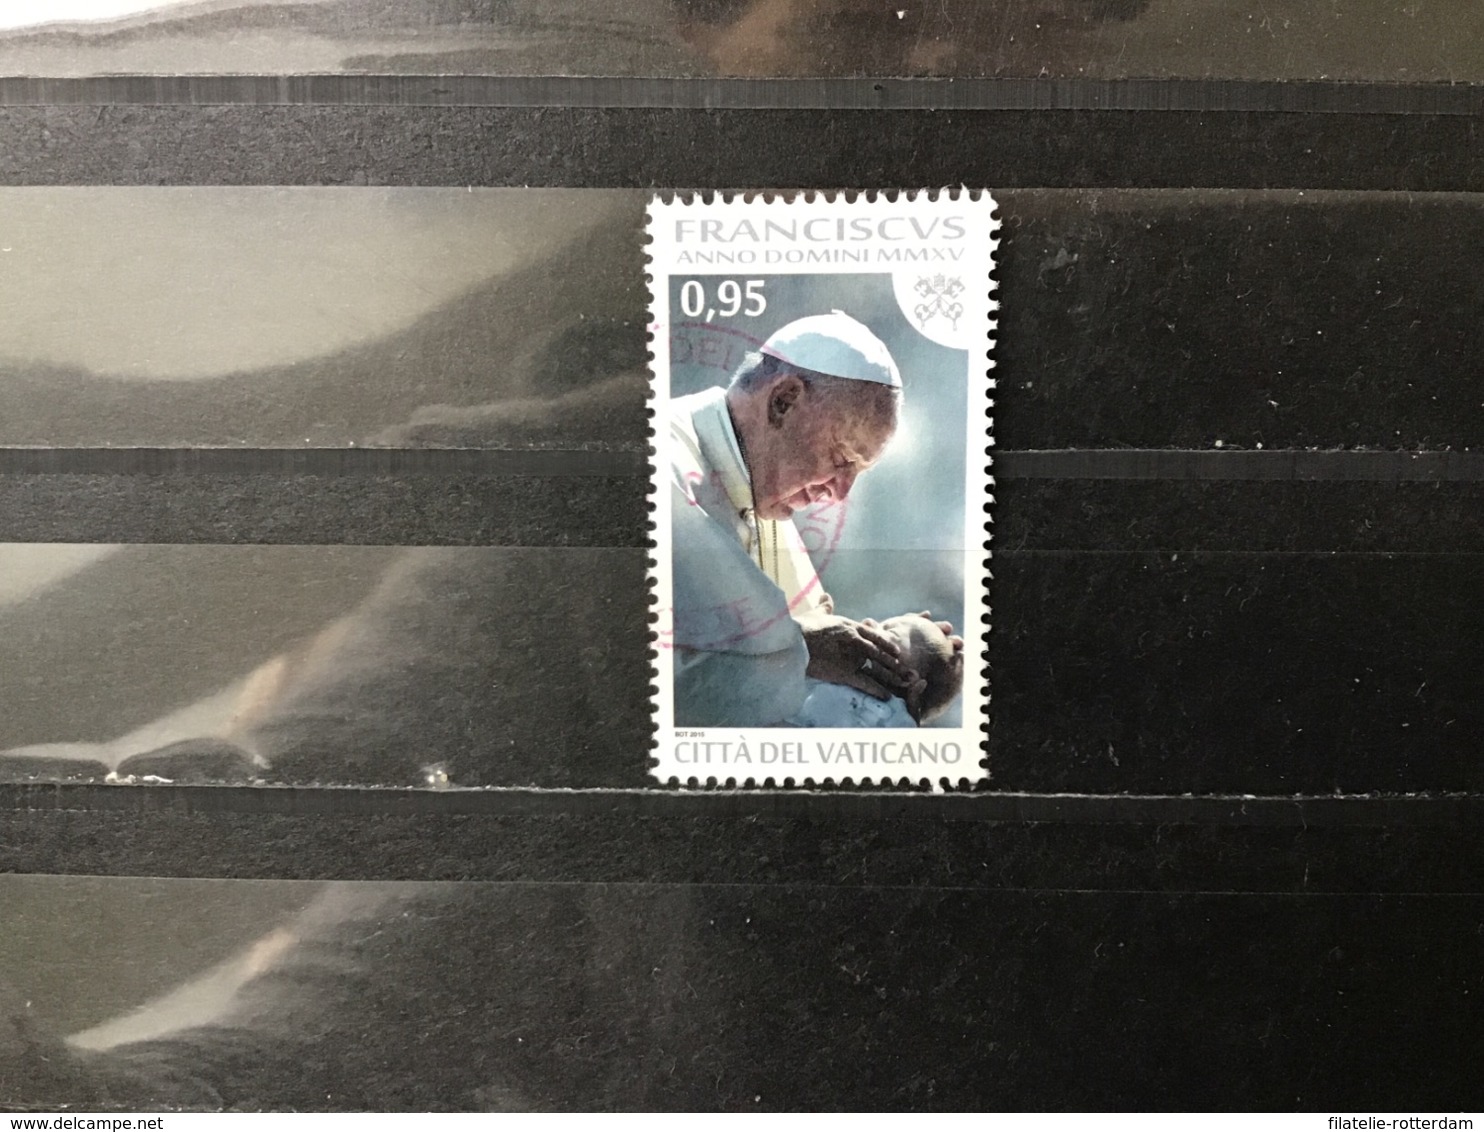 Vaticaanstad / Vatican City - 3 Jaar Paus Franciscus (0.95) 2015 - Used Stamps